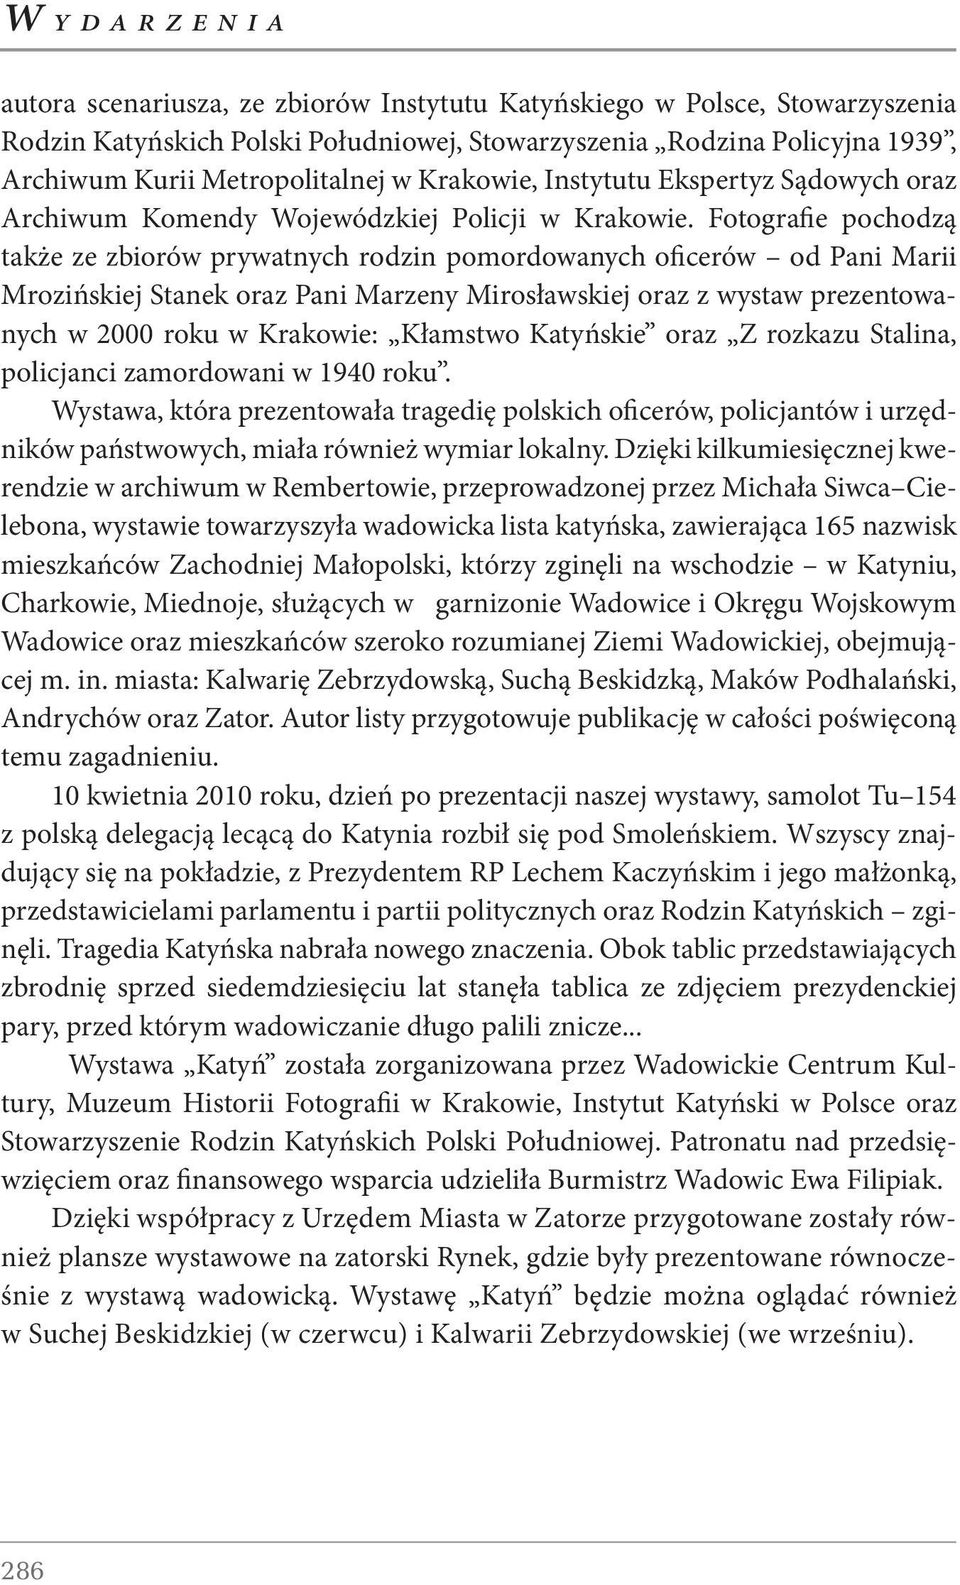 Fotografie pochodzą także ze zbiorów prywatnych rodzin pomordowanych oficerów od Pani Marii Mrozińskiej Stanek oraz Pani Marzeny Mirosławskiej oraz z wystaw prezentowanych w 2000 roku w Krakowie: